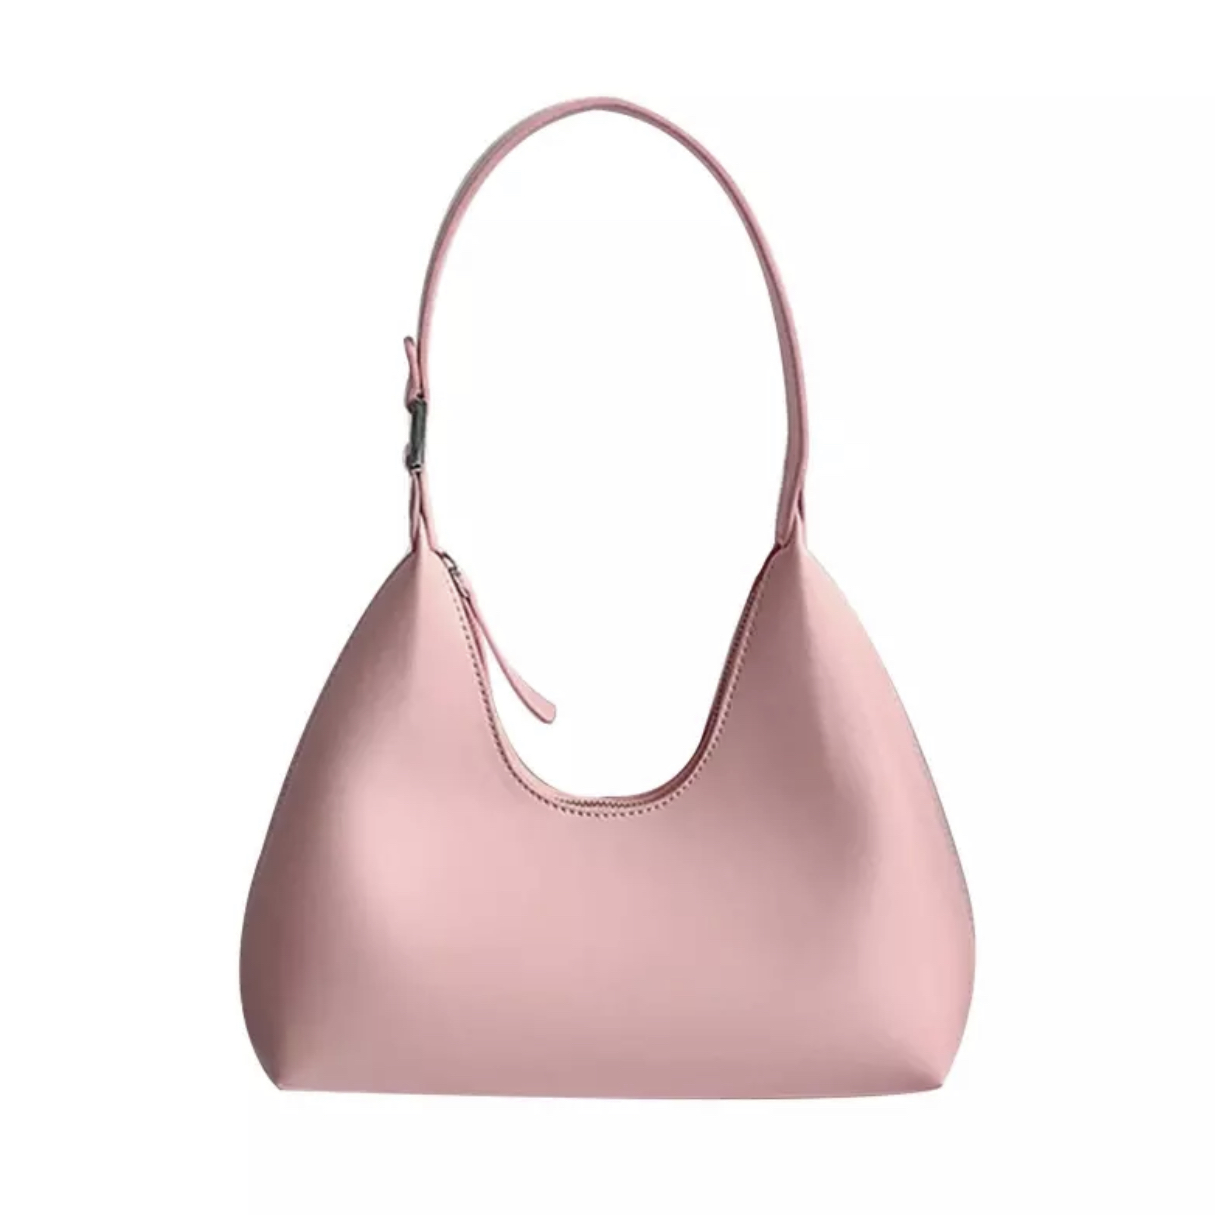 Blush Pink Handbag|Peyton|Jeanette Maree|Shop Online Now